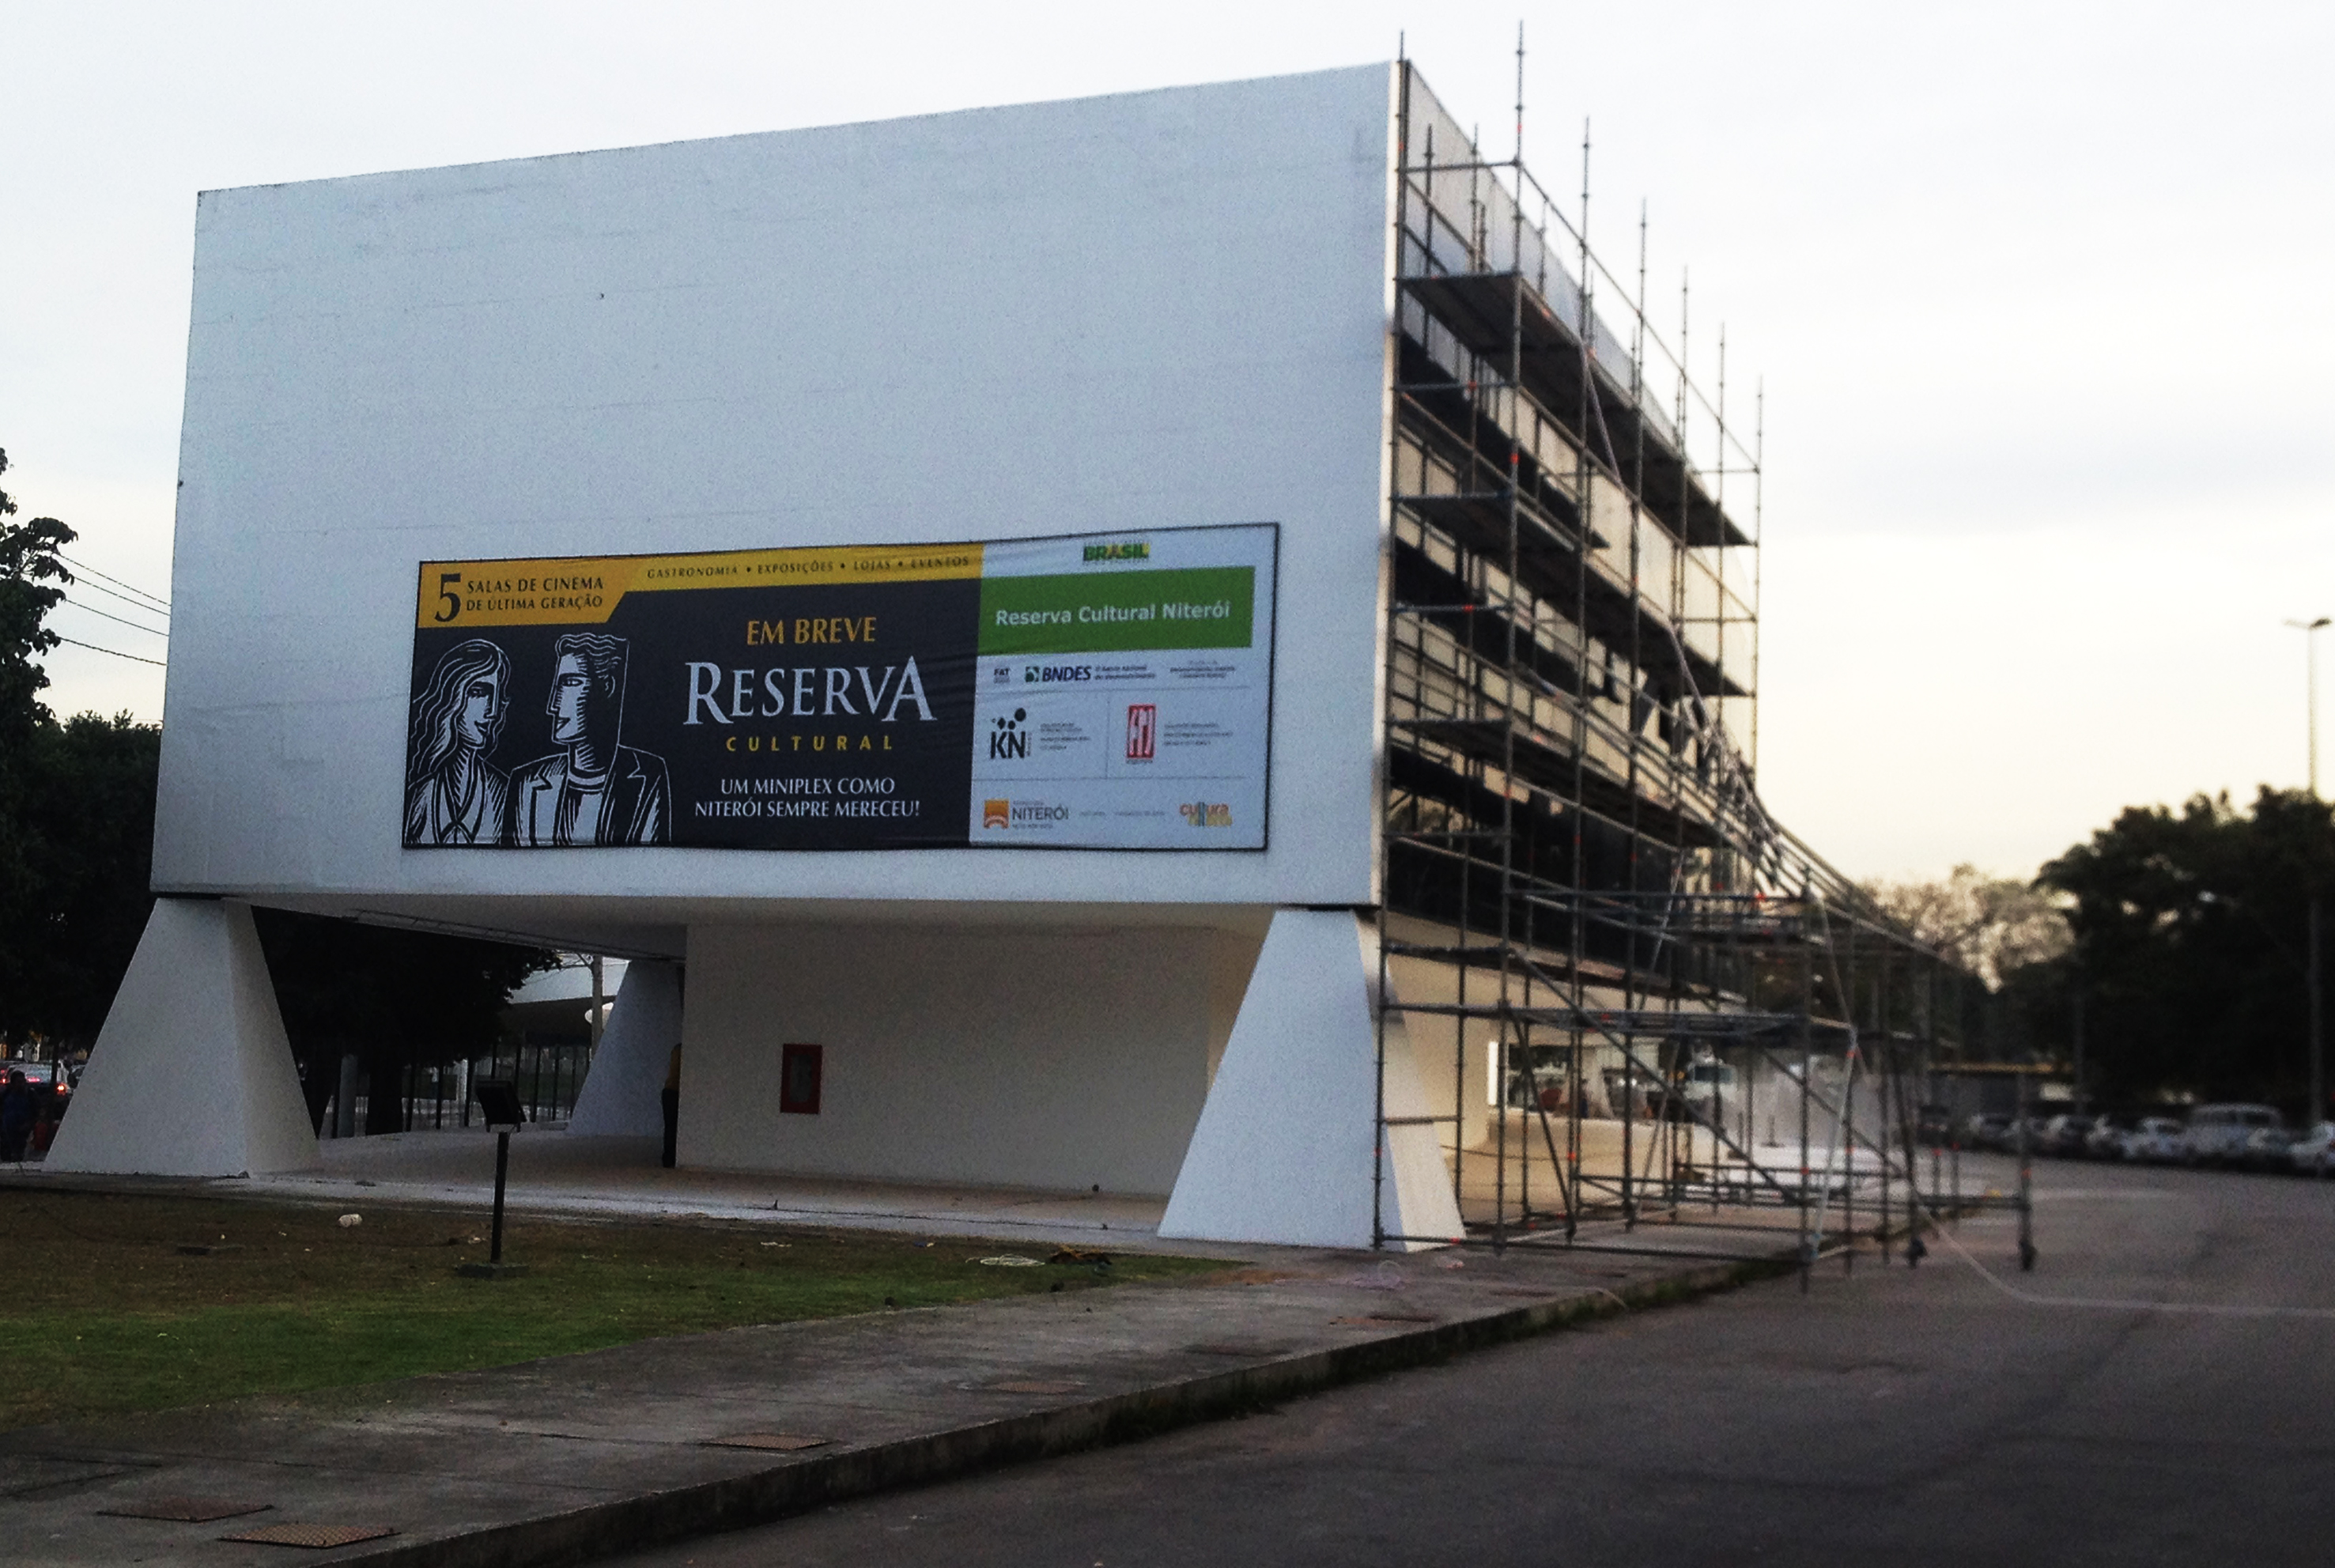  Het Petrobras Filmcentrum, 11 jaar gesloten, heropent in Rio